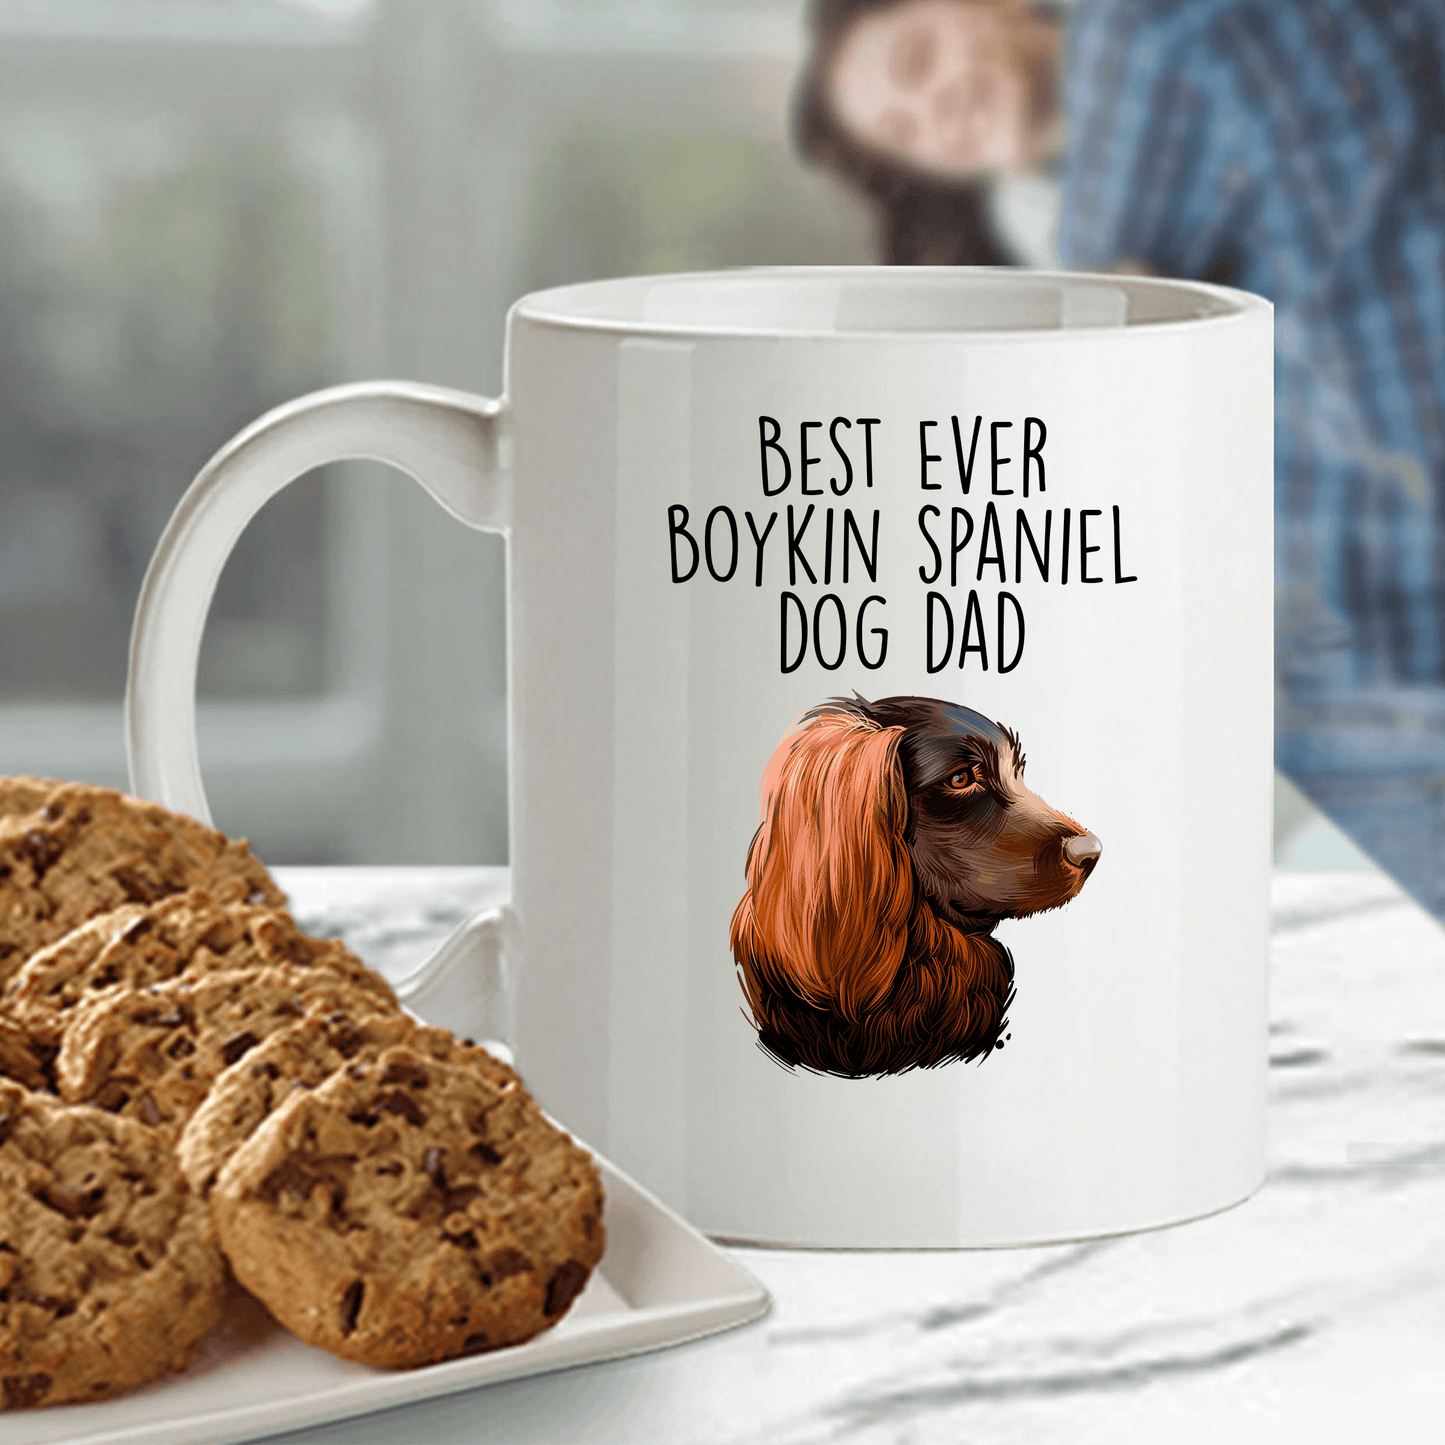 Best Ever Boykin Spaniel Dog Dad Ceramic Coffee Mug